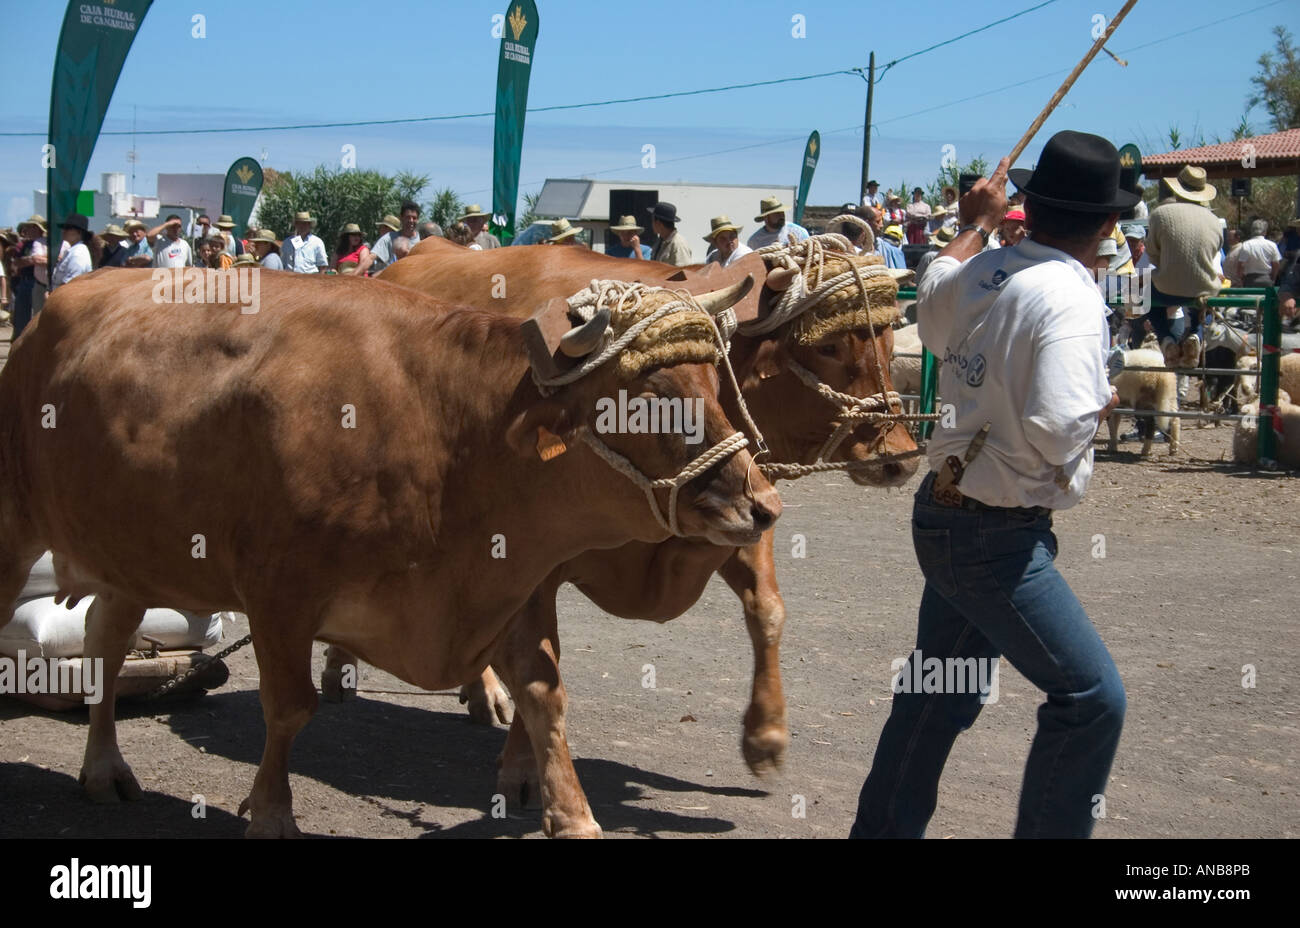 Einer der rund zwanzig Konkurrenten bei Feria auf Gran Canaria. Bauer mit Bullen ziehen schweren Last sind zeitlich mehr als 100 Meter. Stockfoto